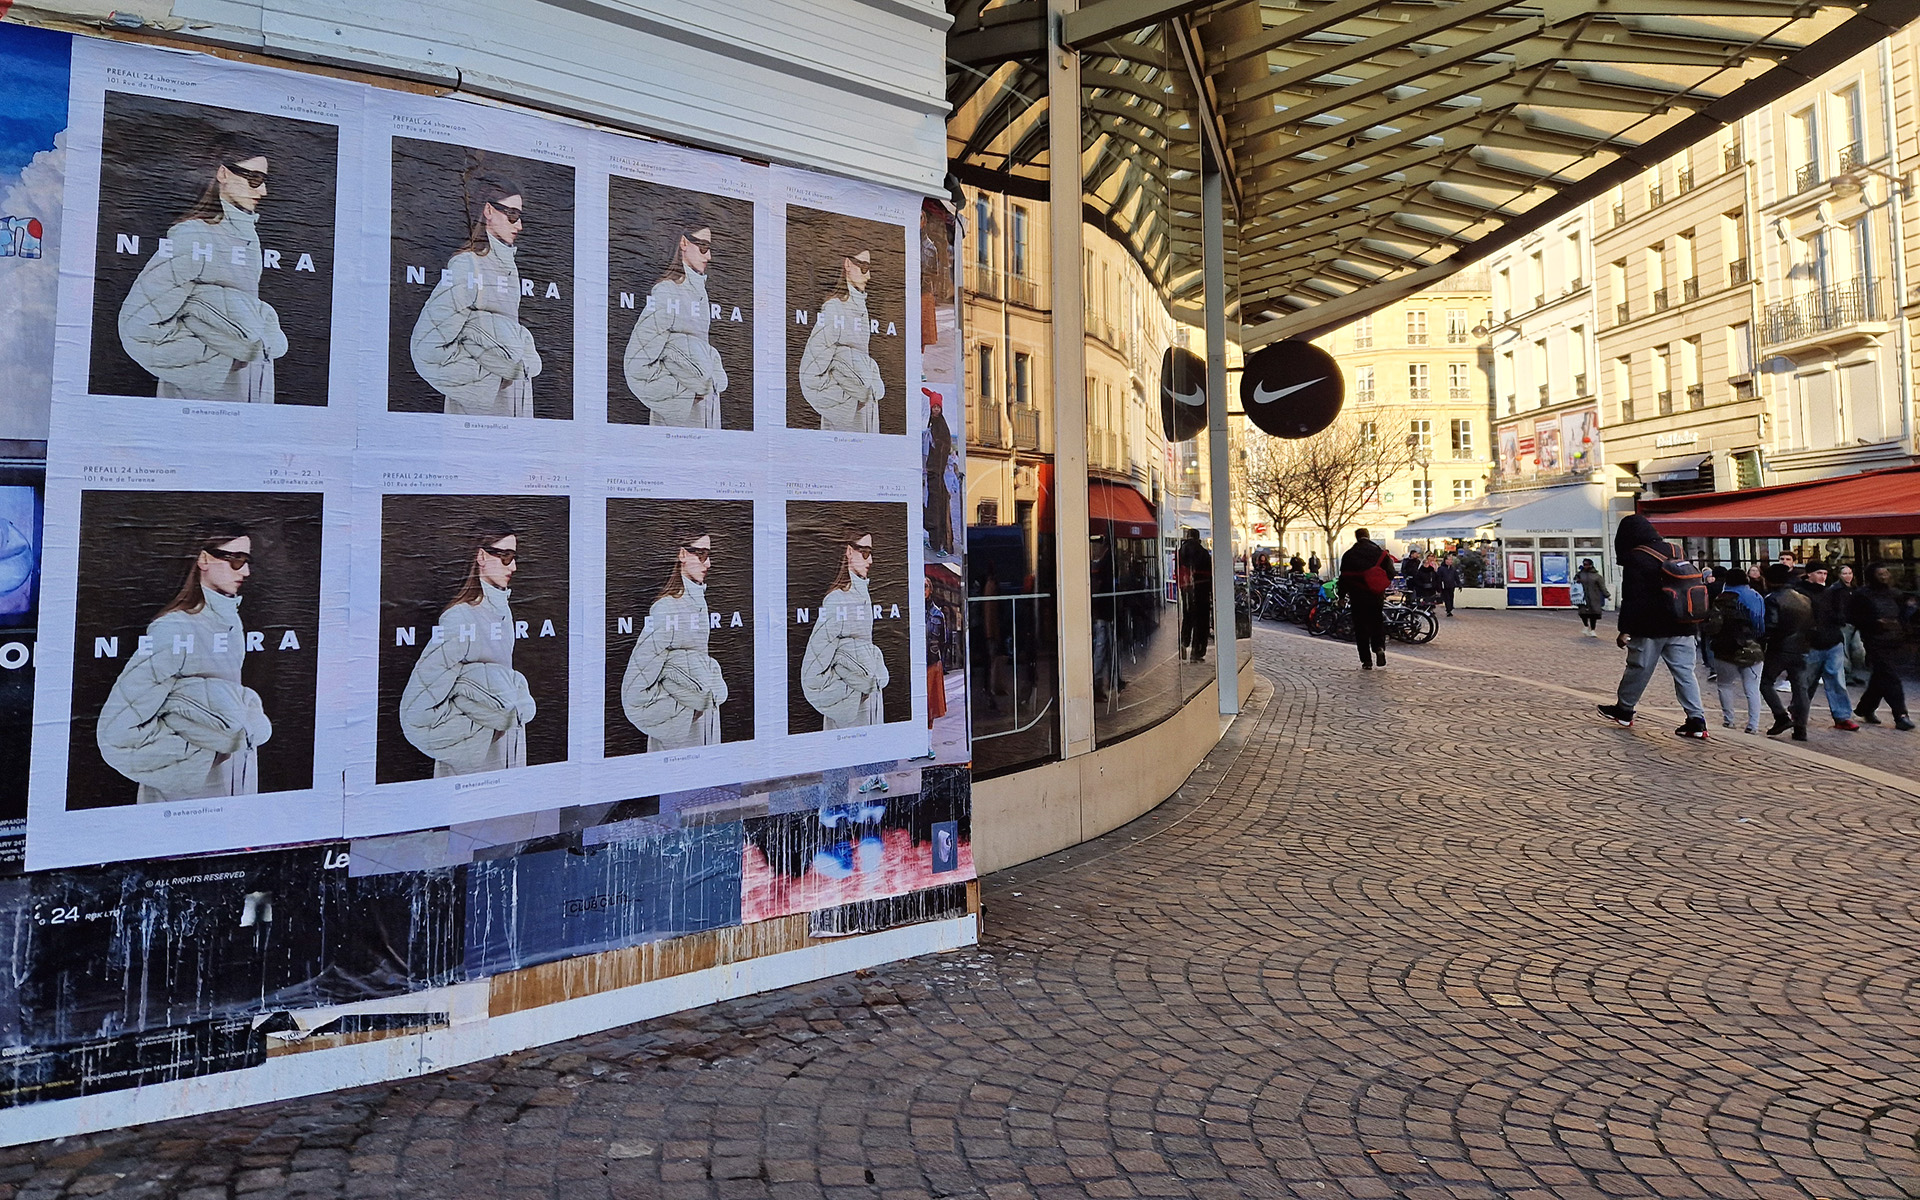 Affichage sauvage street marketing dans Les Halles à Paris pour une marque de mode.